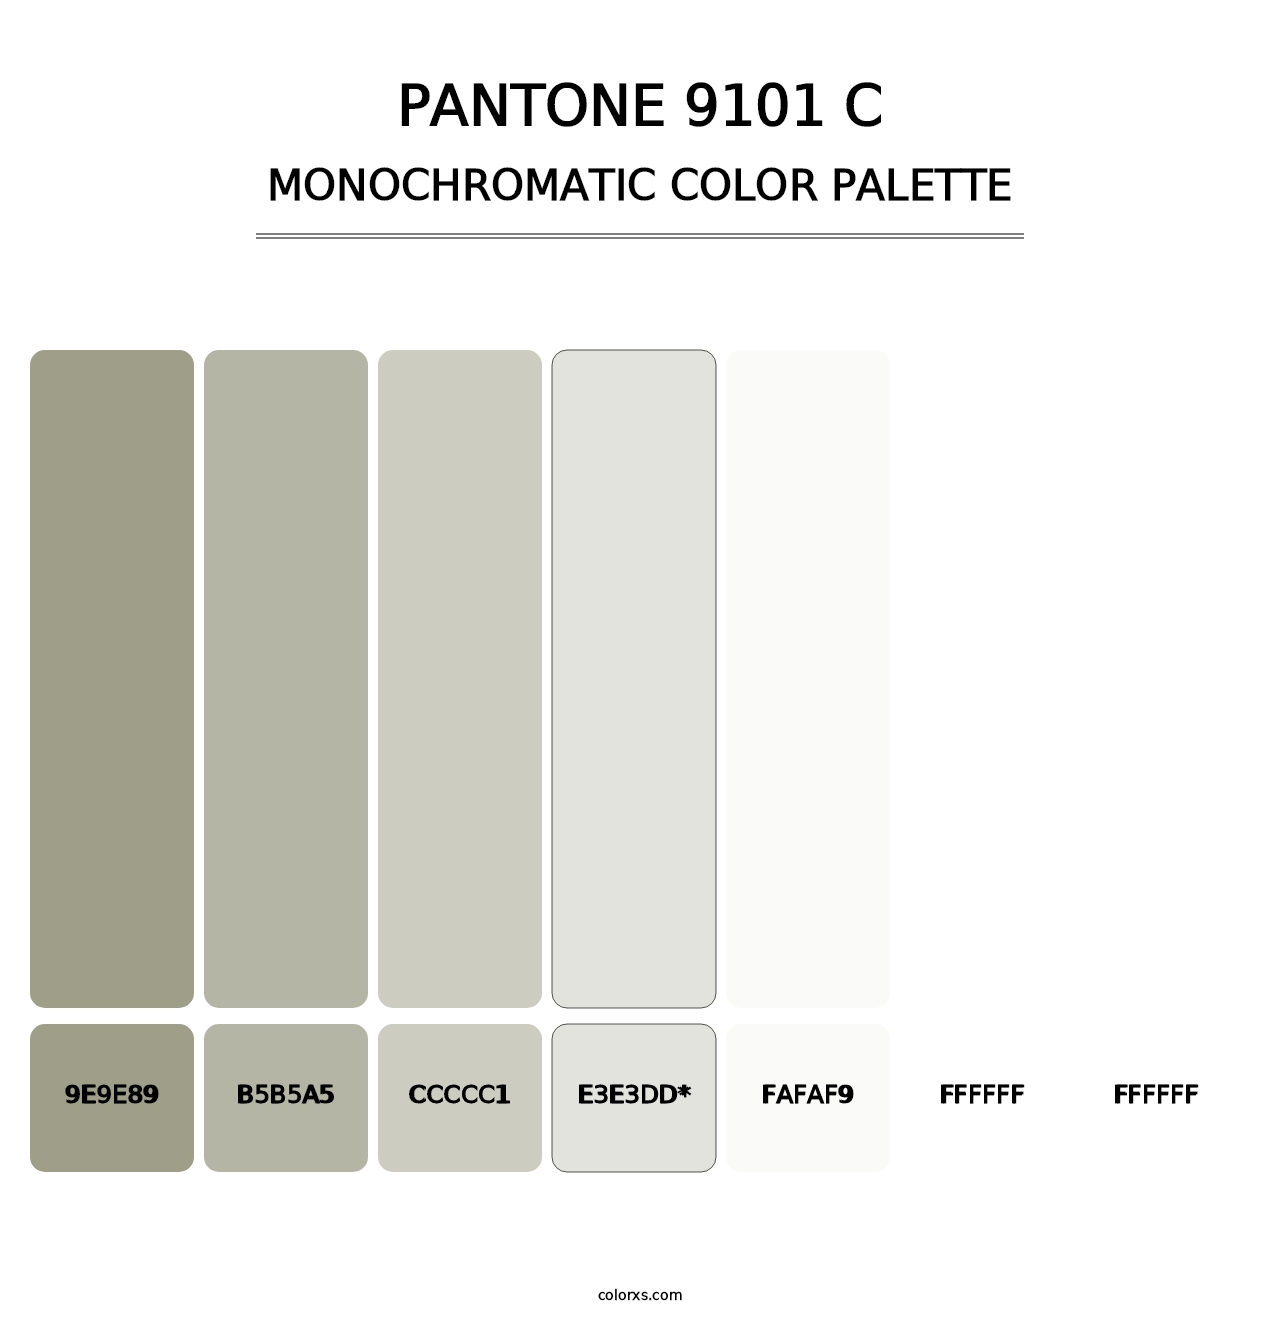 PANTONE 9101 C - Monochromatic Color Palette